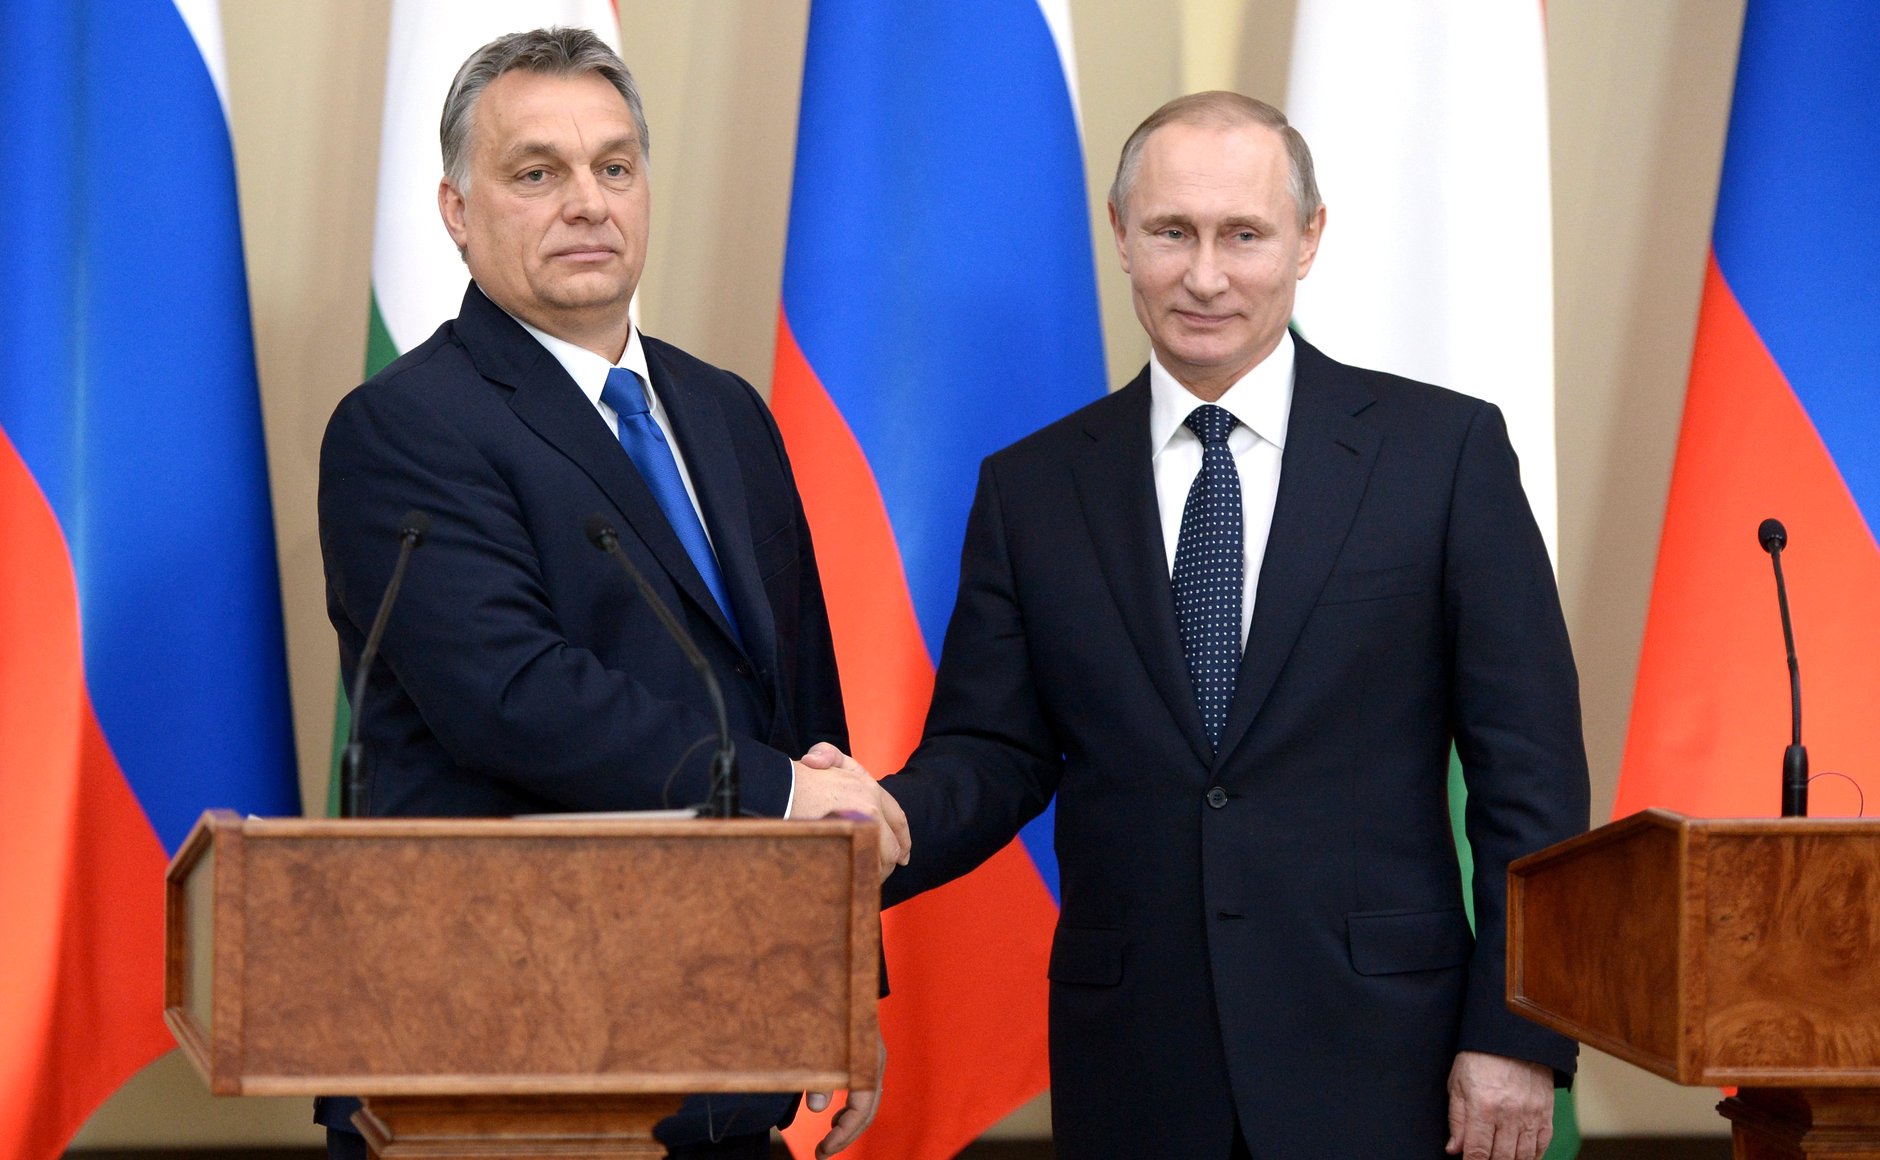 Hiába a nemzetközi tiltakozás, nyáron jön Putyin bankja, Orbán volt minisztere is bekerül a vezetőségbe